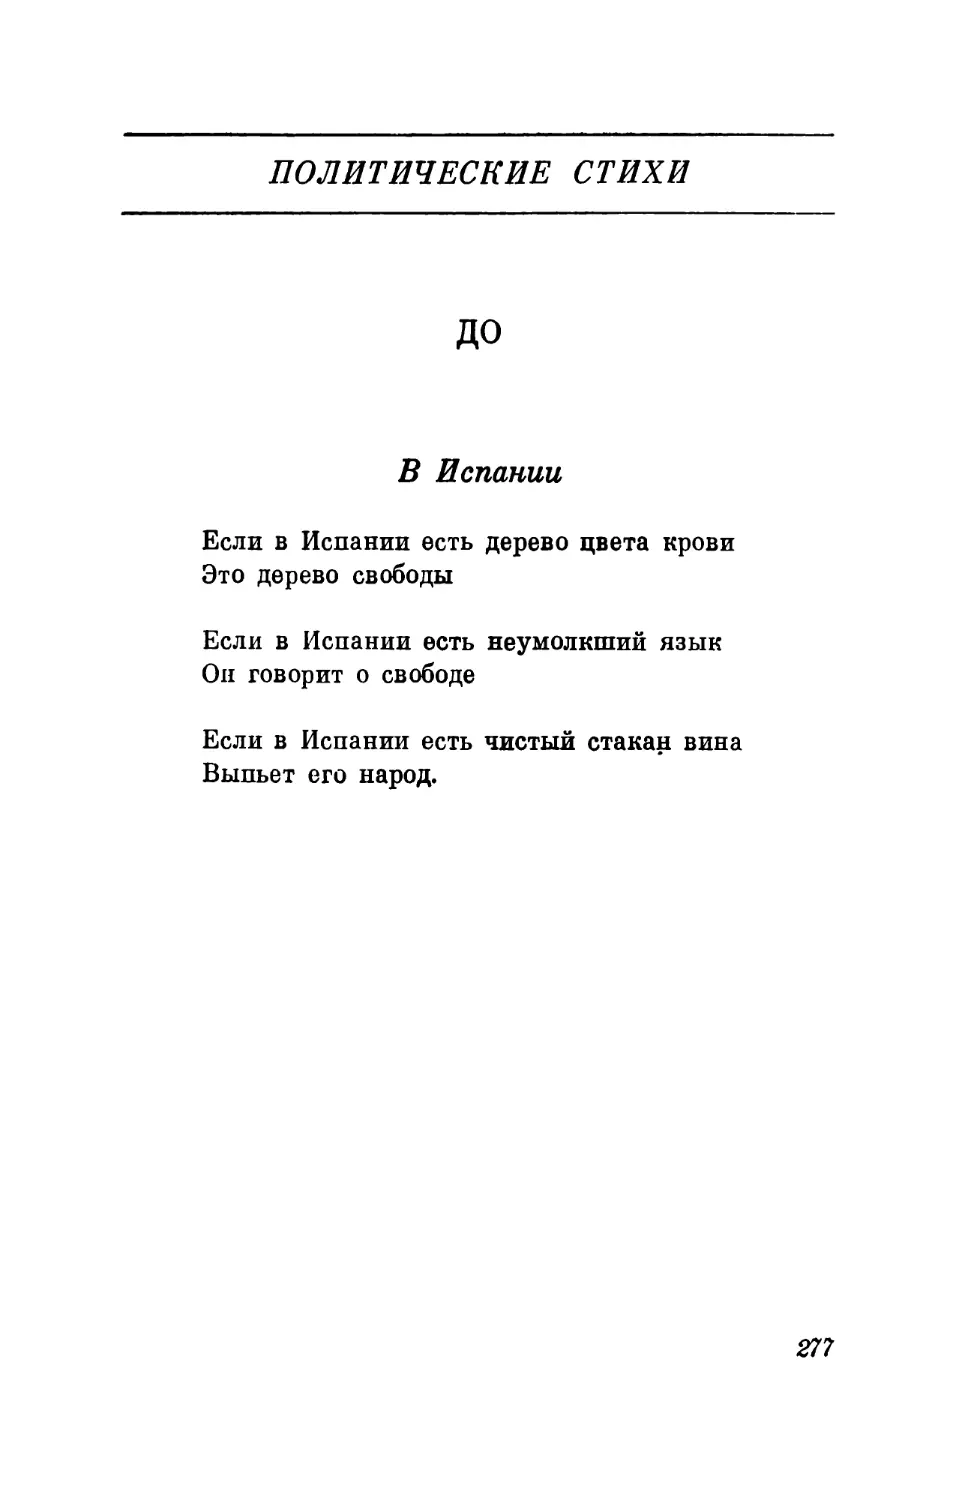 Политические стихи. 1948